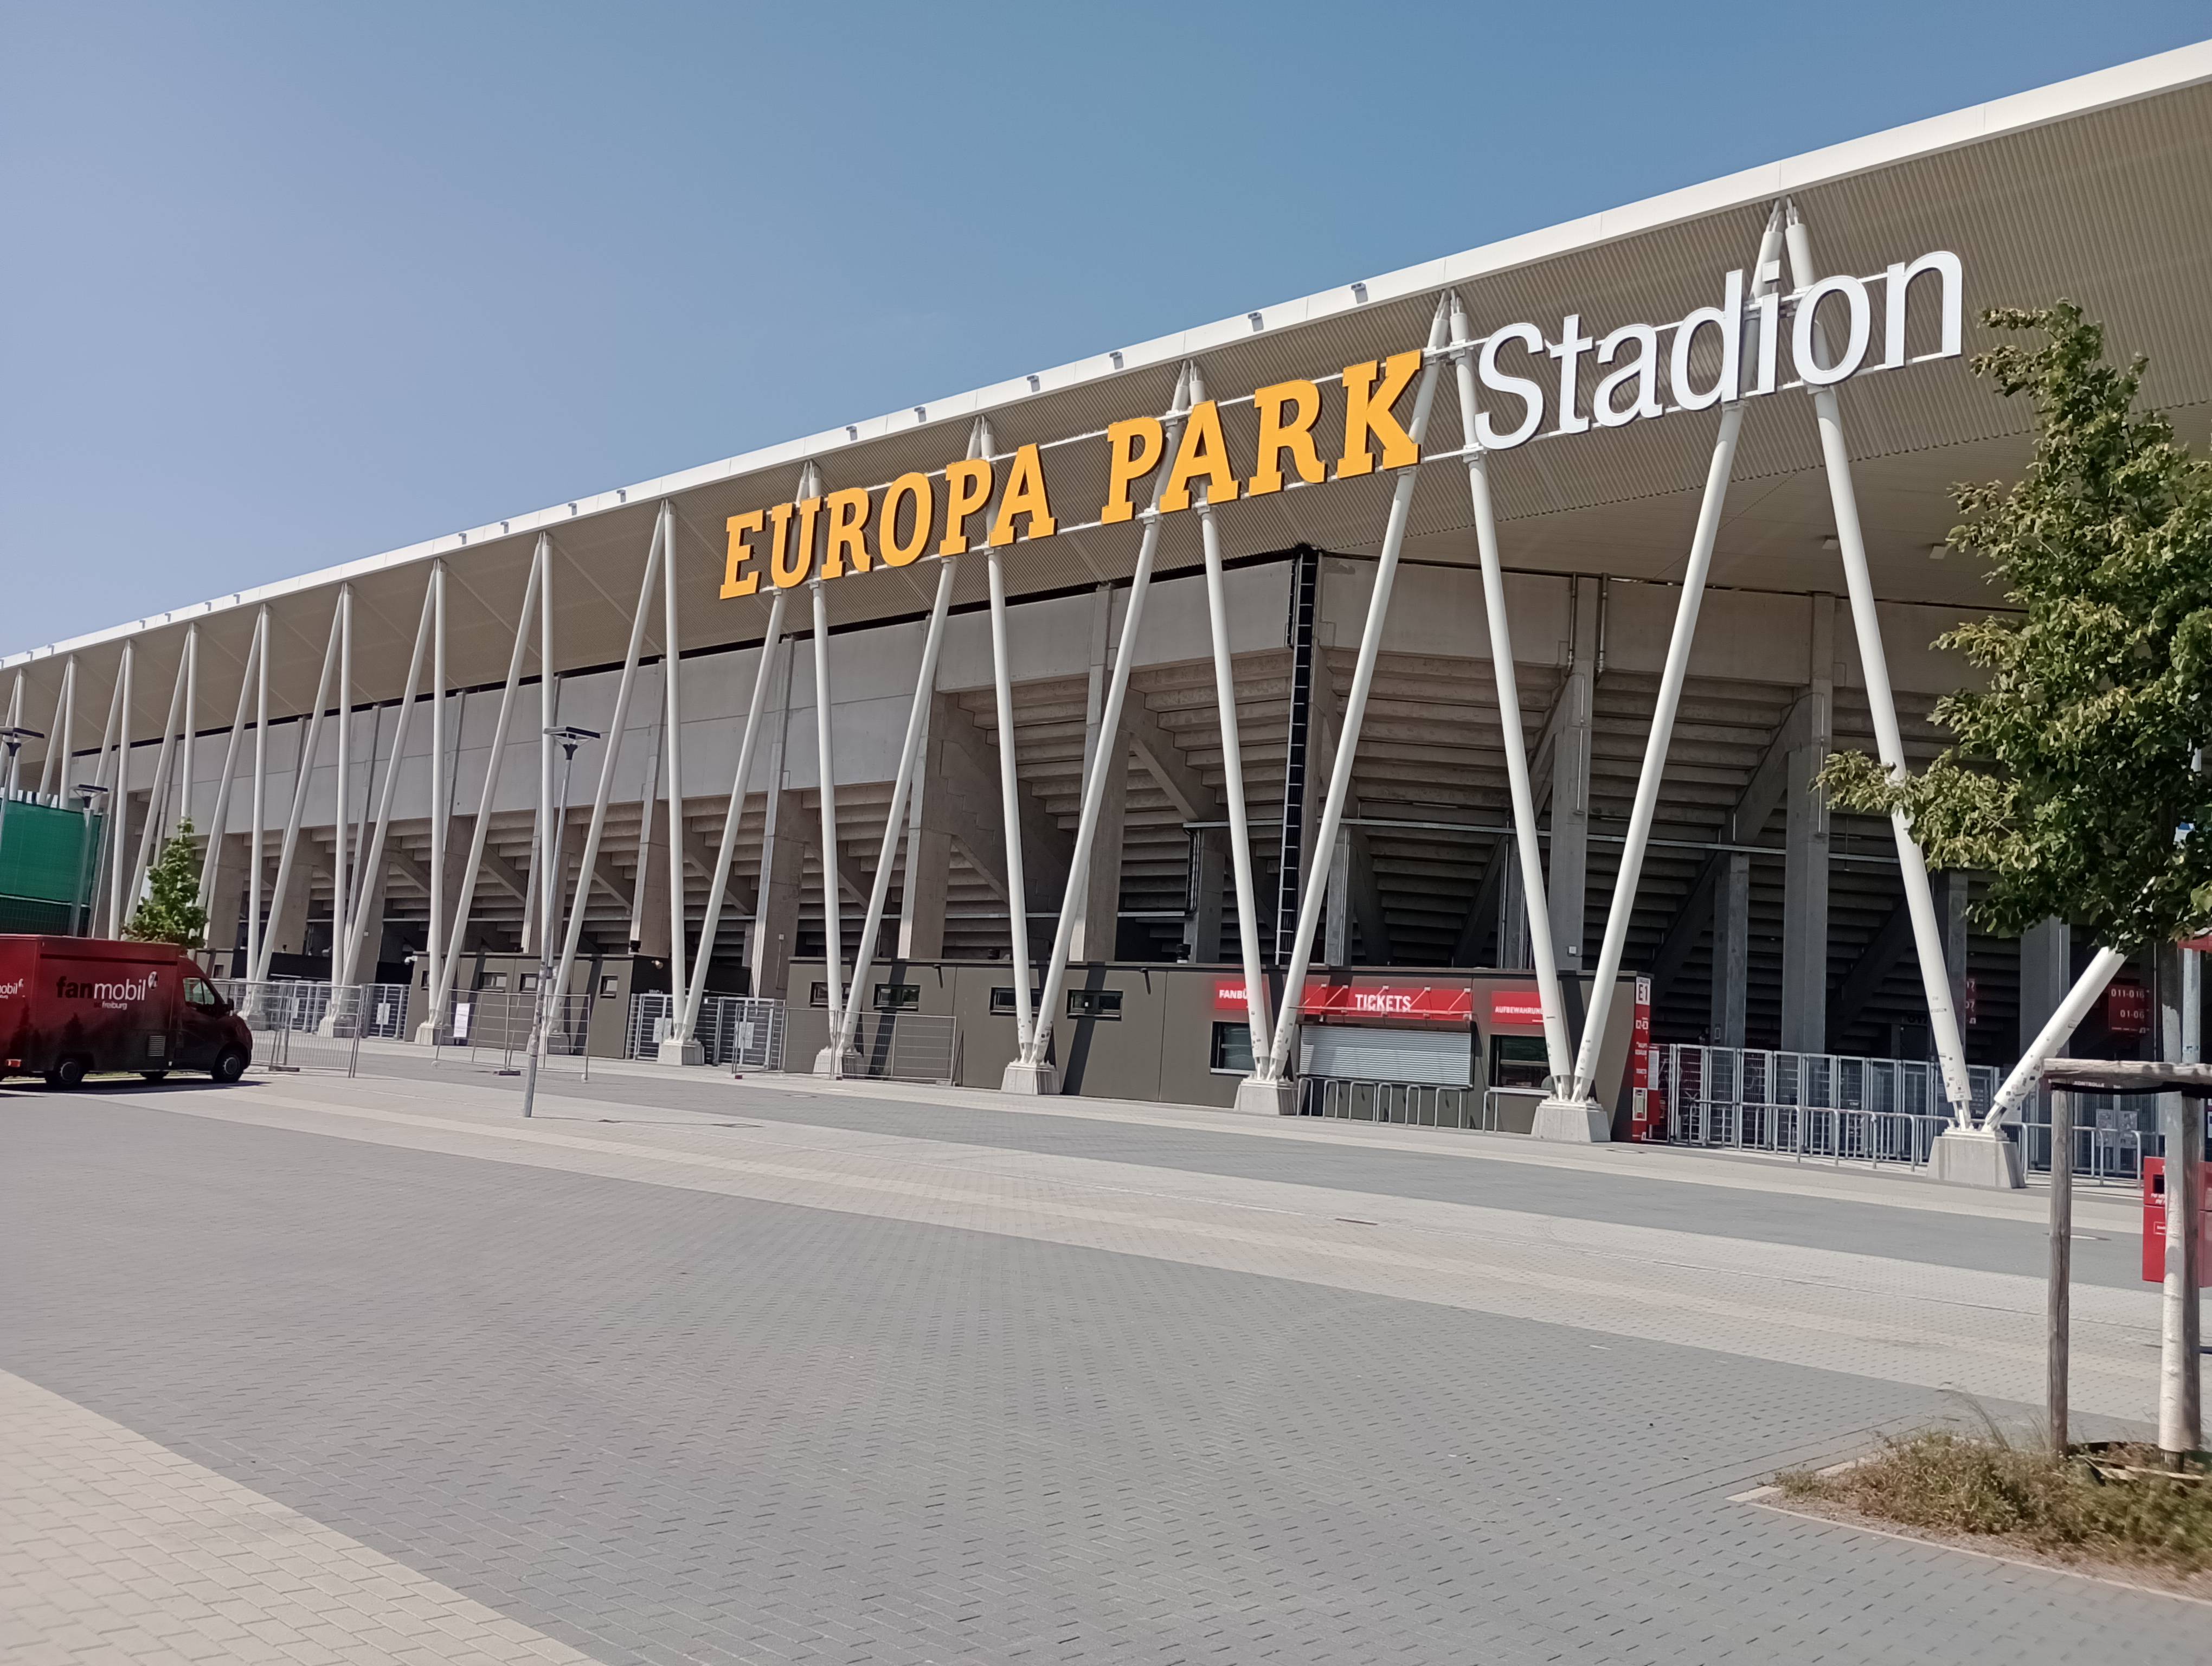 Bild 2 Europa-Park Stadion in Freiburg im Breisgau